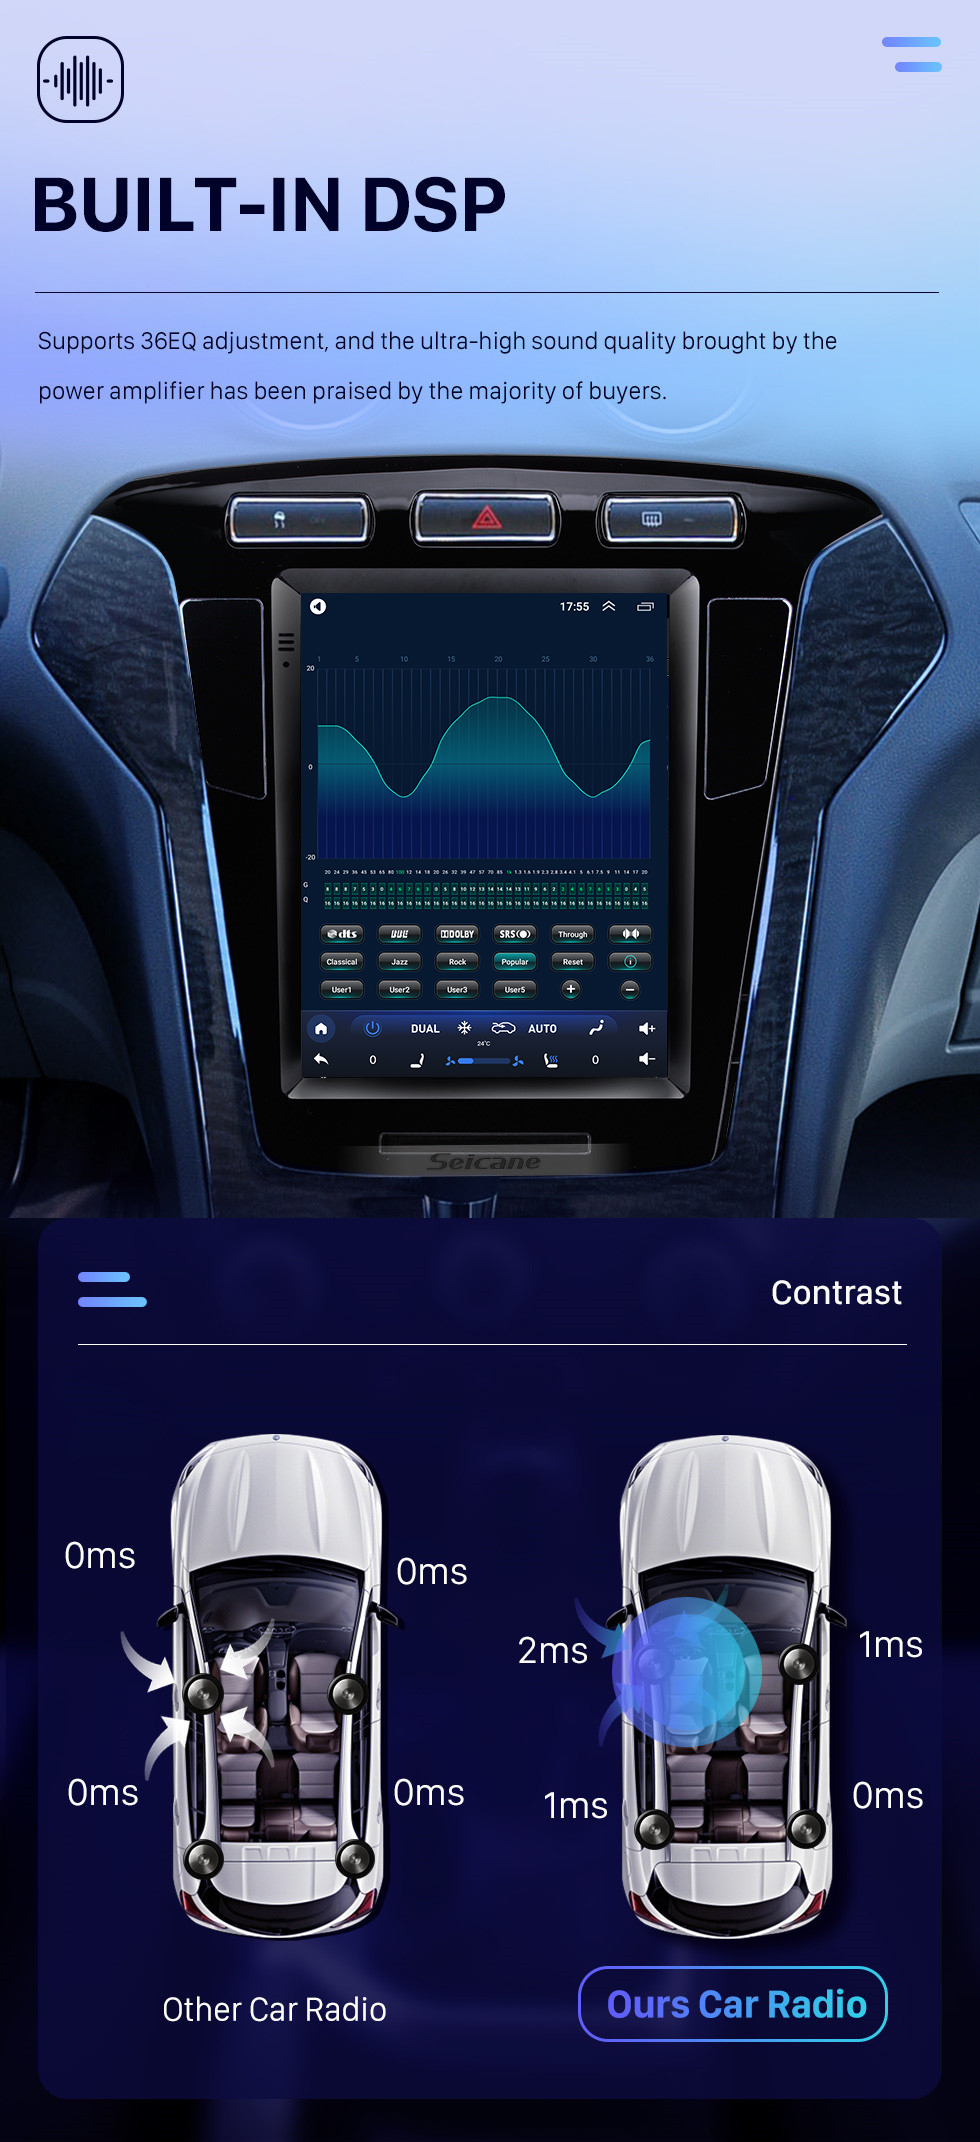 Seicane Tela sensível ao toque HD de 9,7 polegadas para 2011-2013 Ford Mondeo mk4 rádio do carro Bluetooth Carplay sistema estéreo suporte câmera AHD